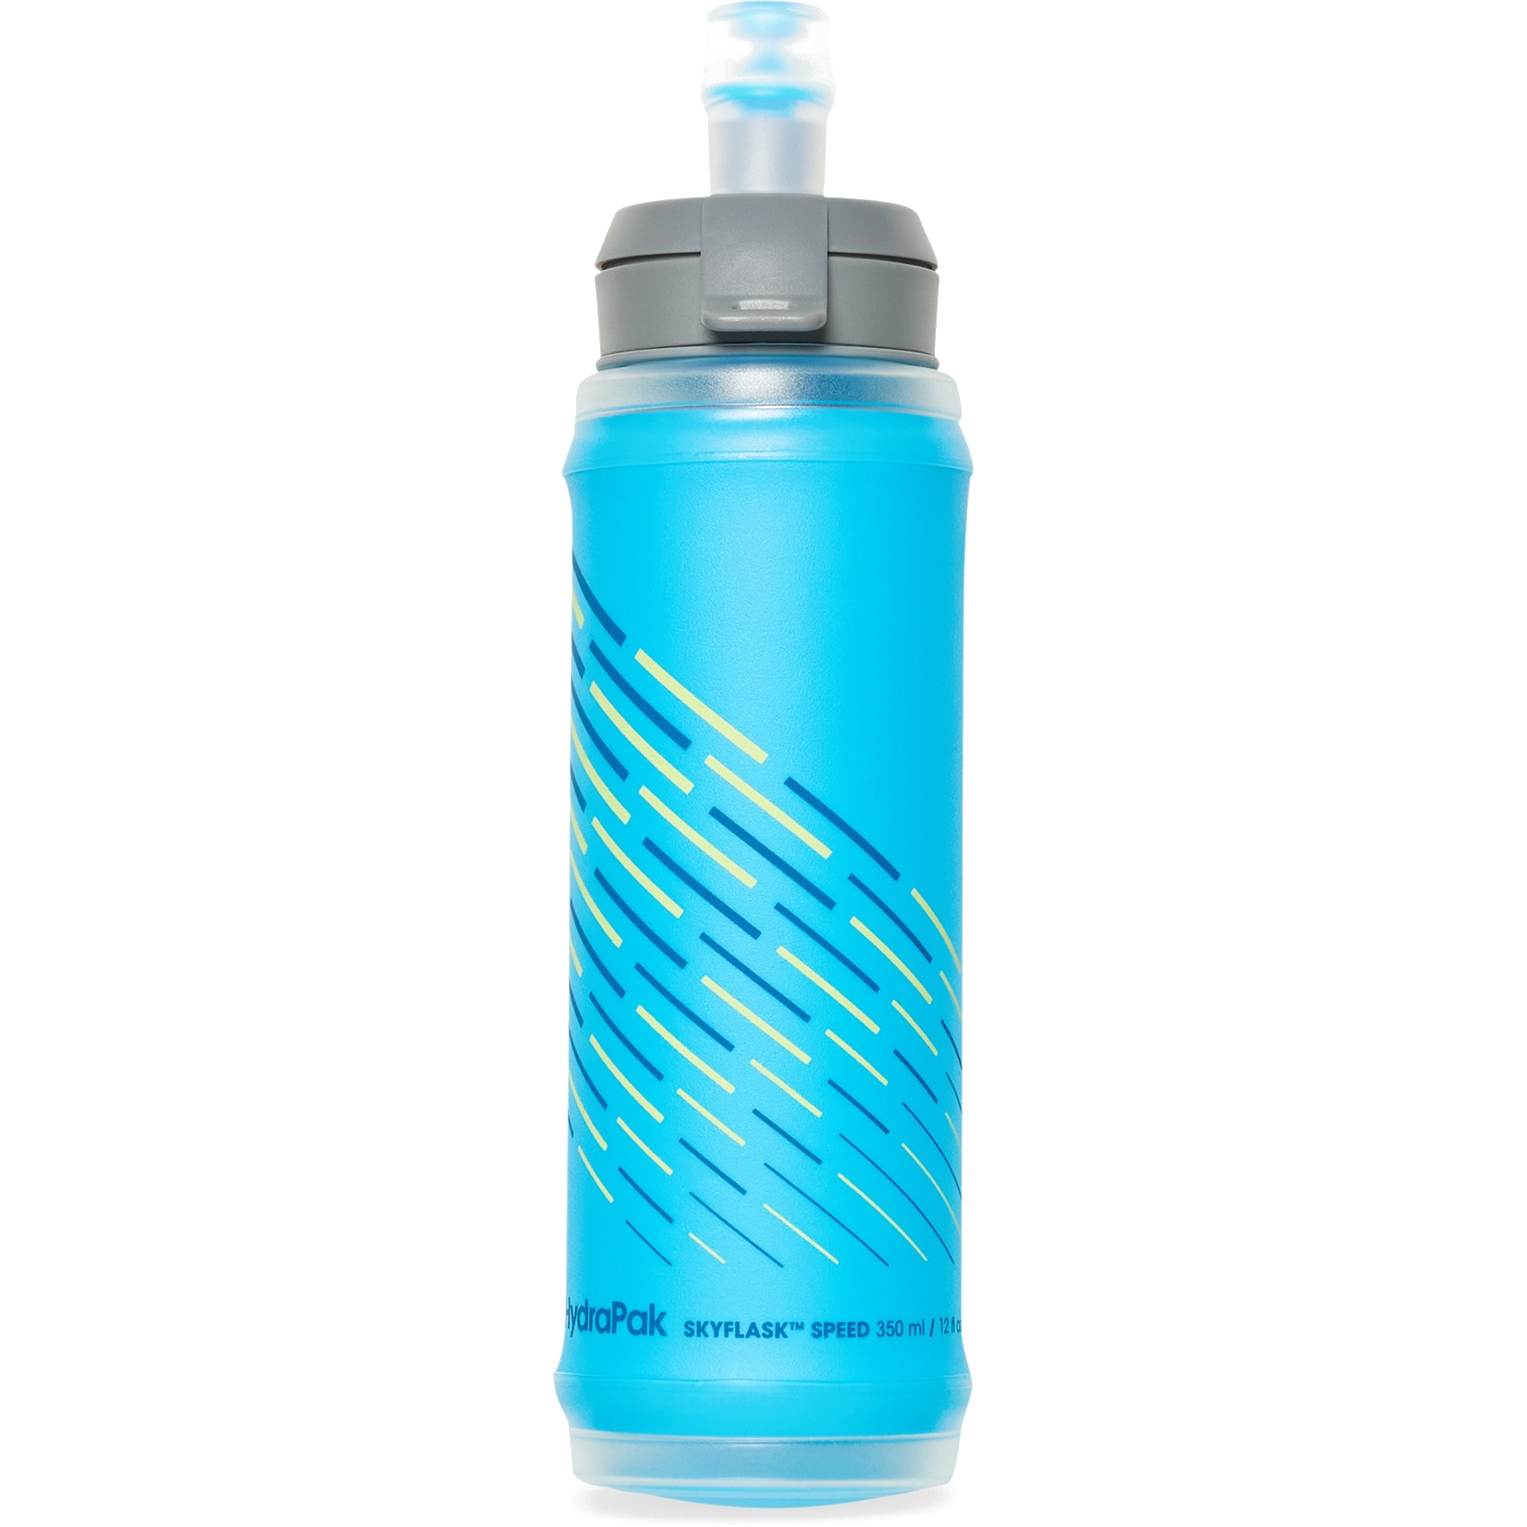 Productfoto van Hydrapak SkyFlask™ Speed Waterfles - 350ml - Malibu Blue